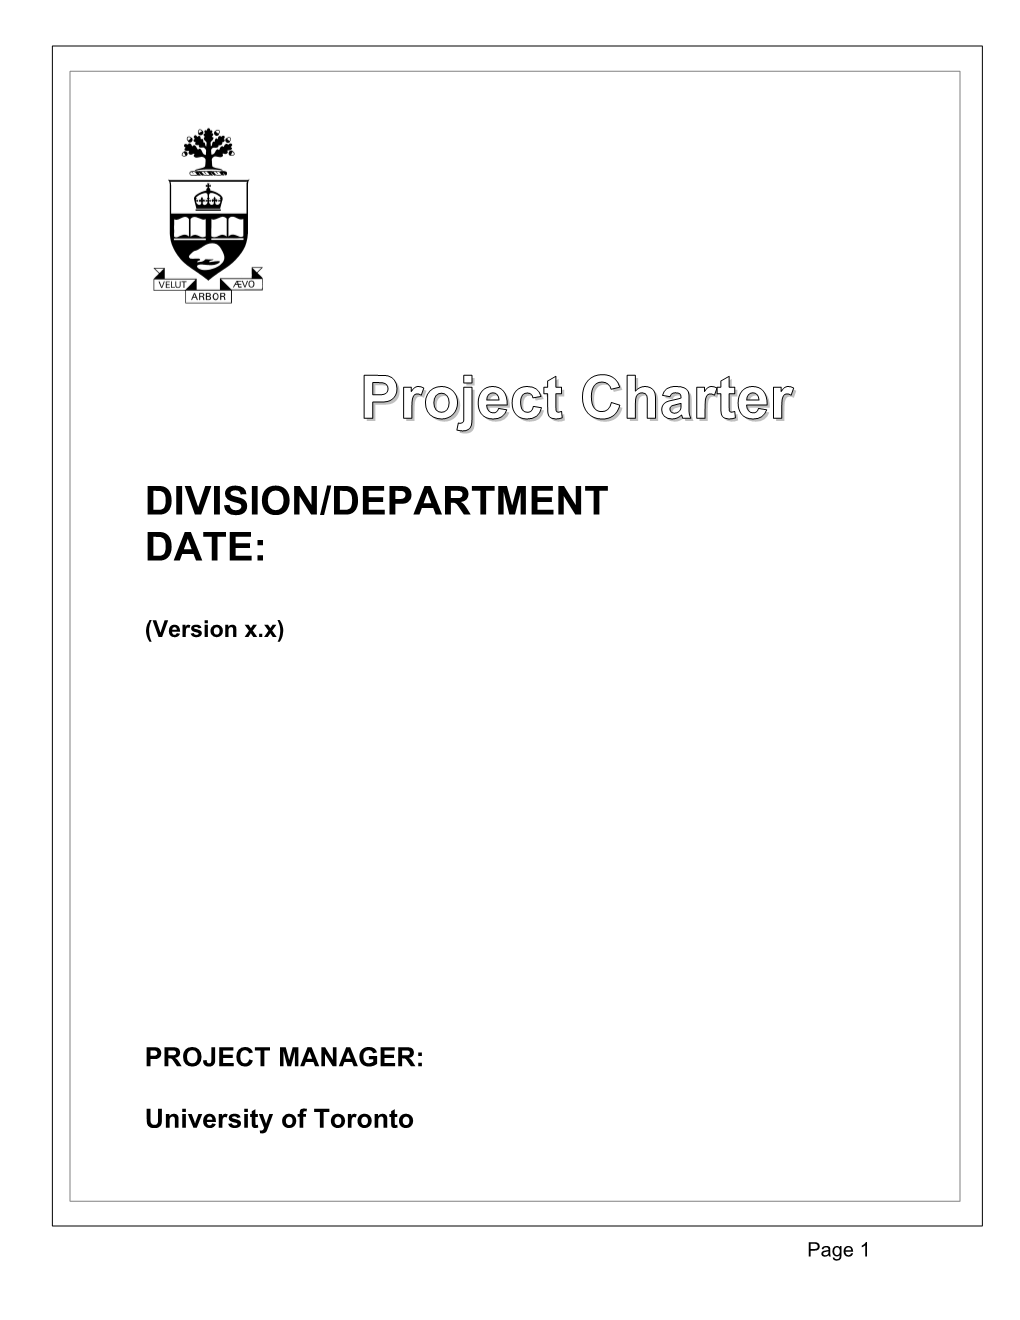 Division/Department